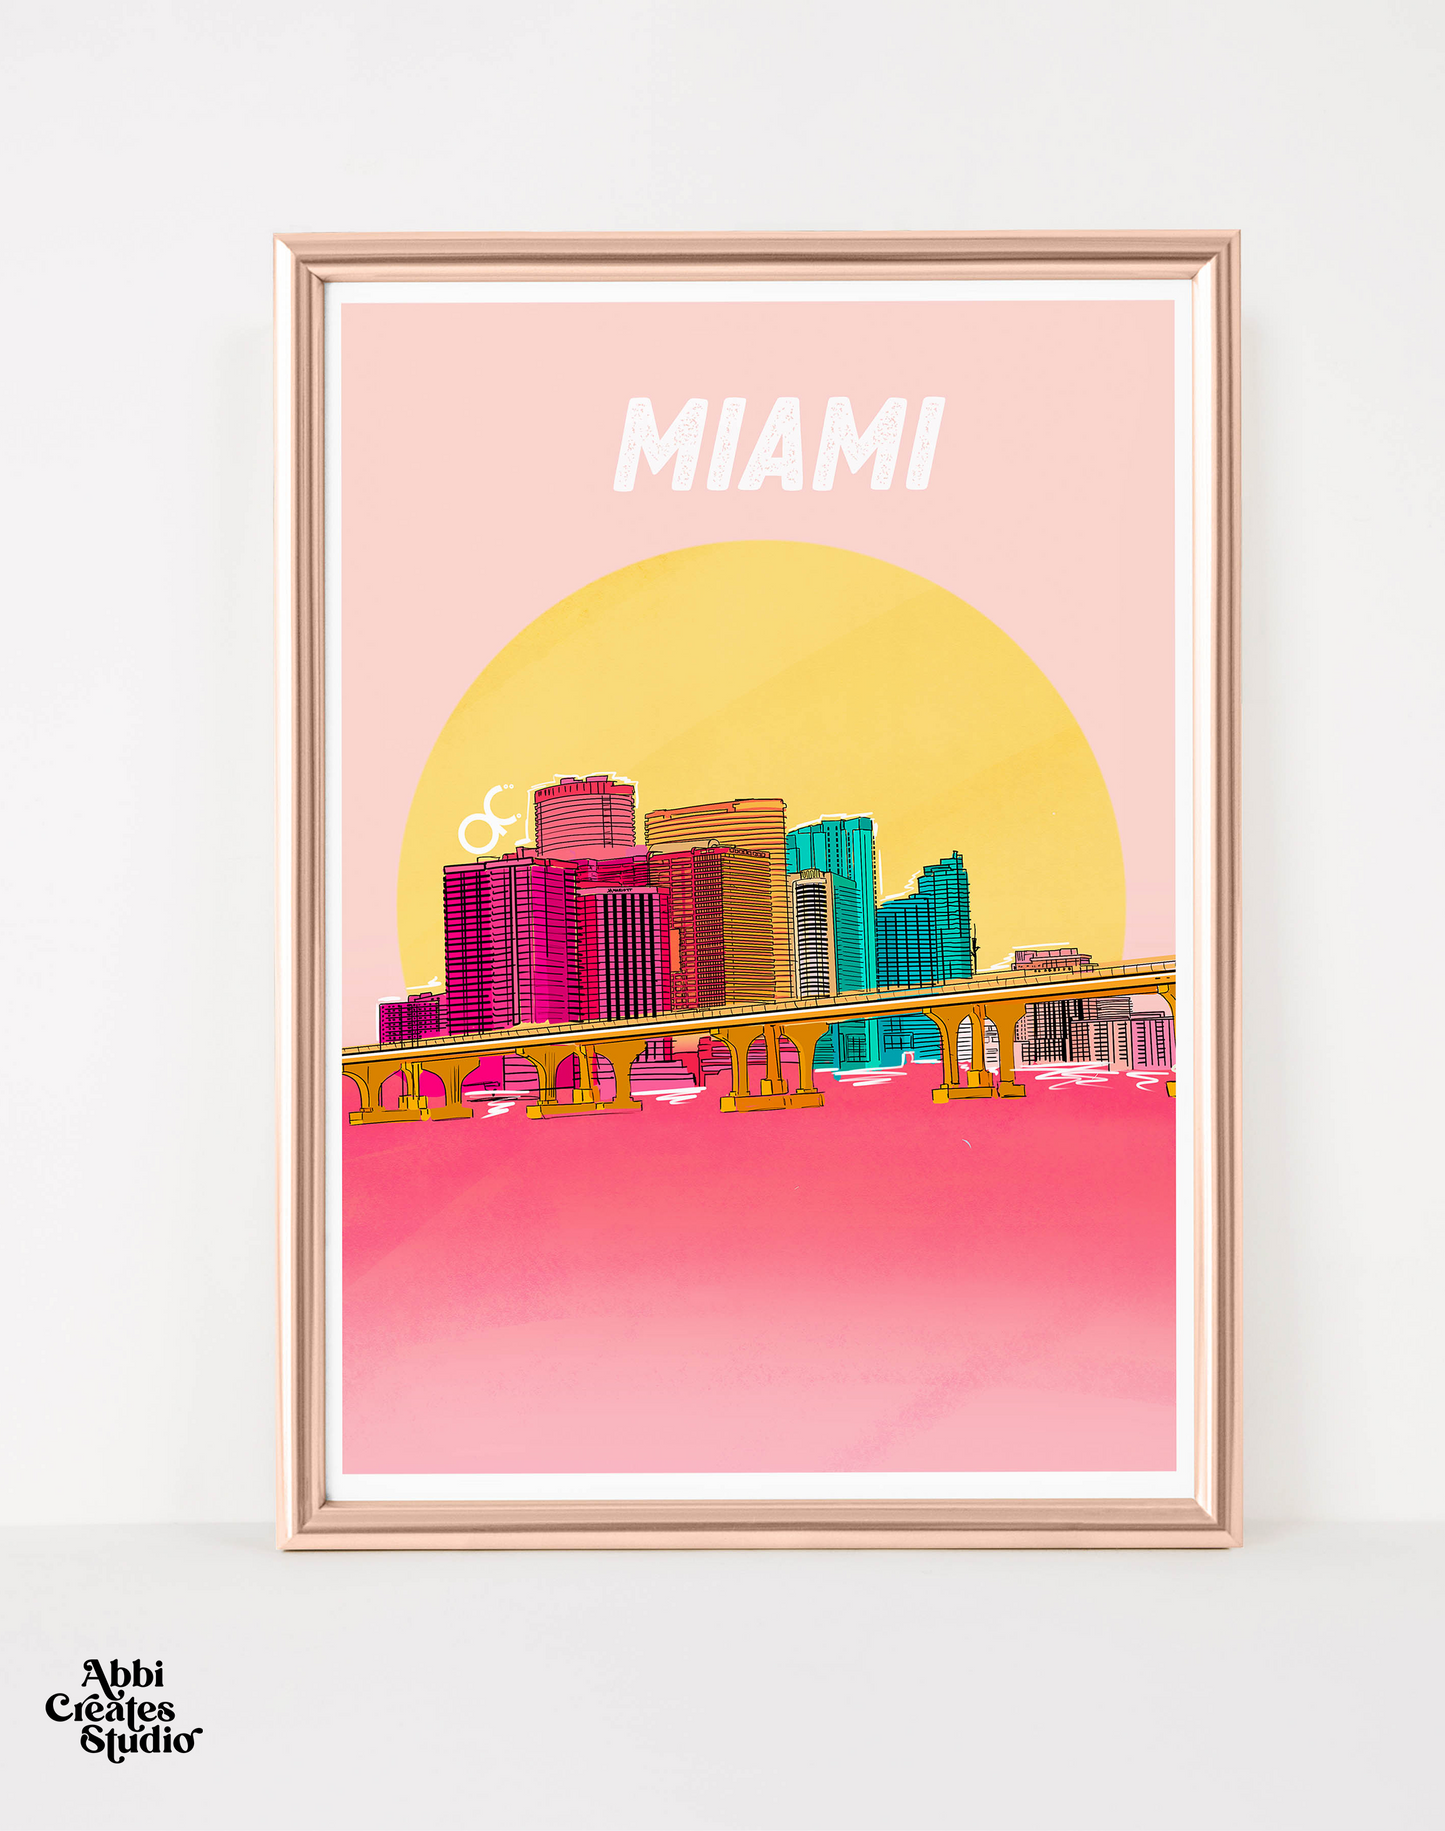 Miami Art Print collection By Abbicreates Studio - Abbicreates Studio